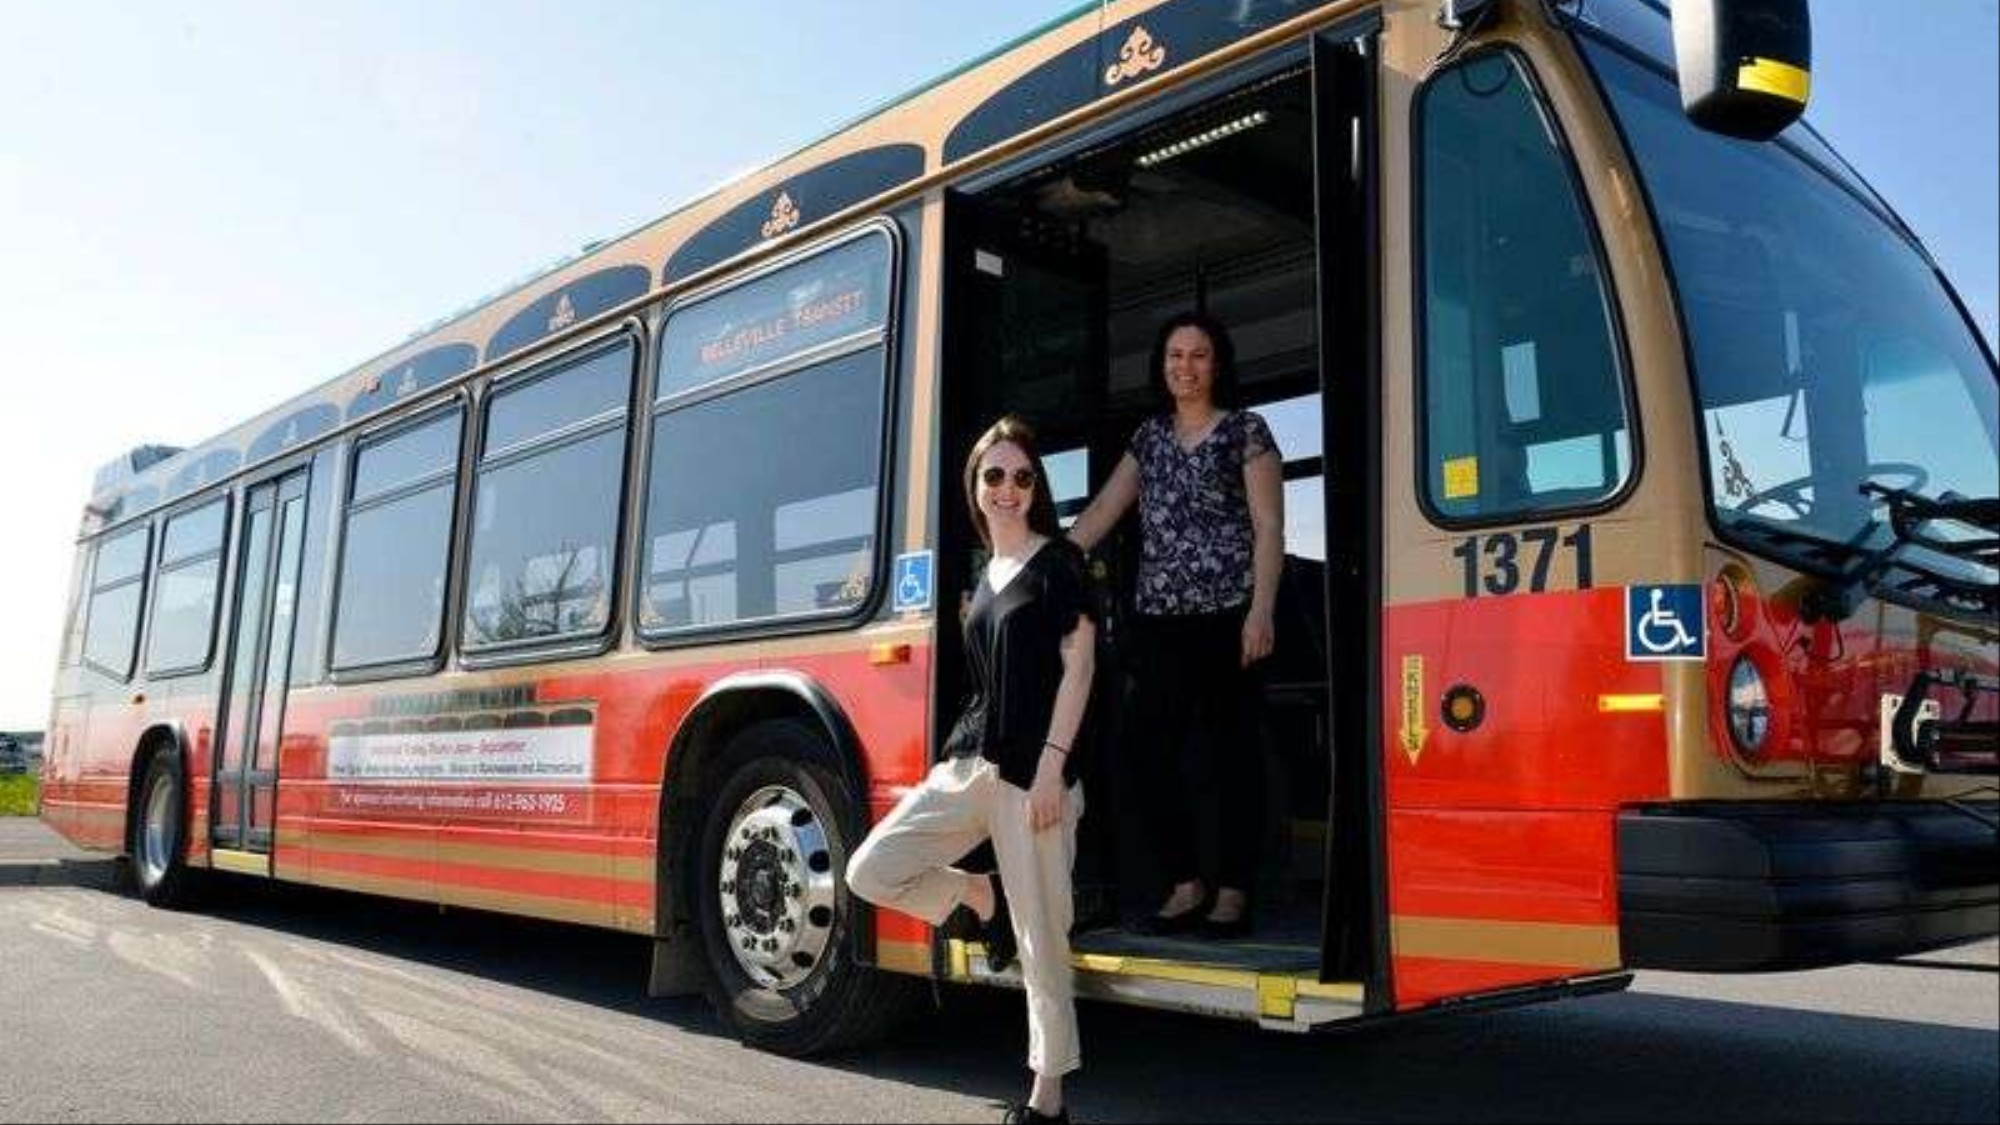 Жители канадского города разработали «Uber-сервис» с автобусами, а не автомобилями - 1